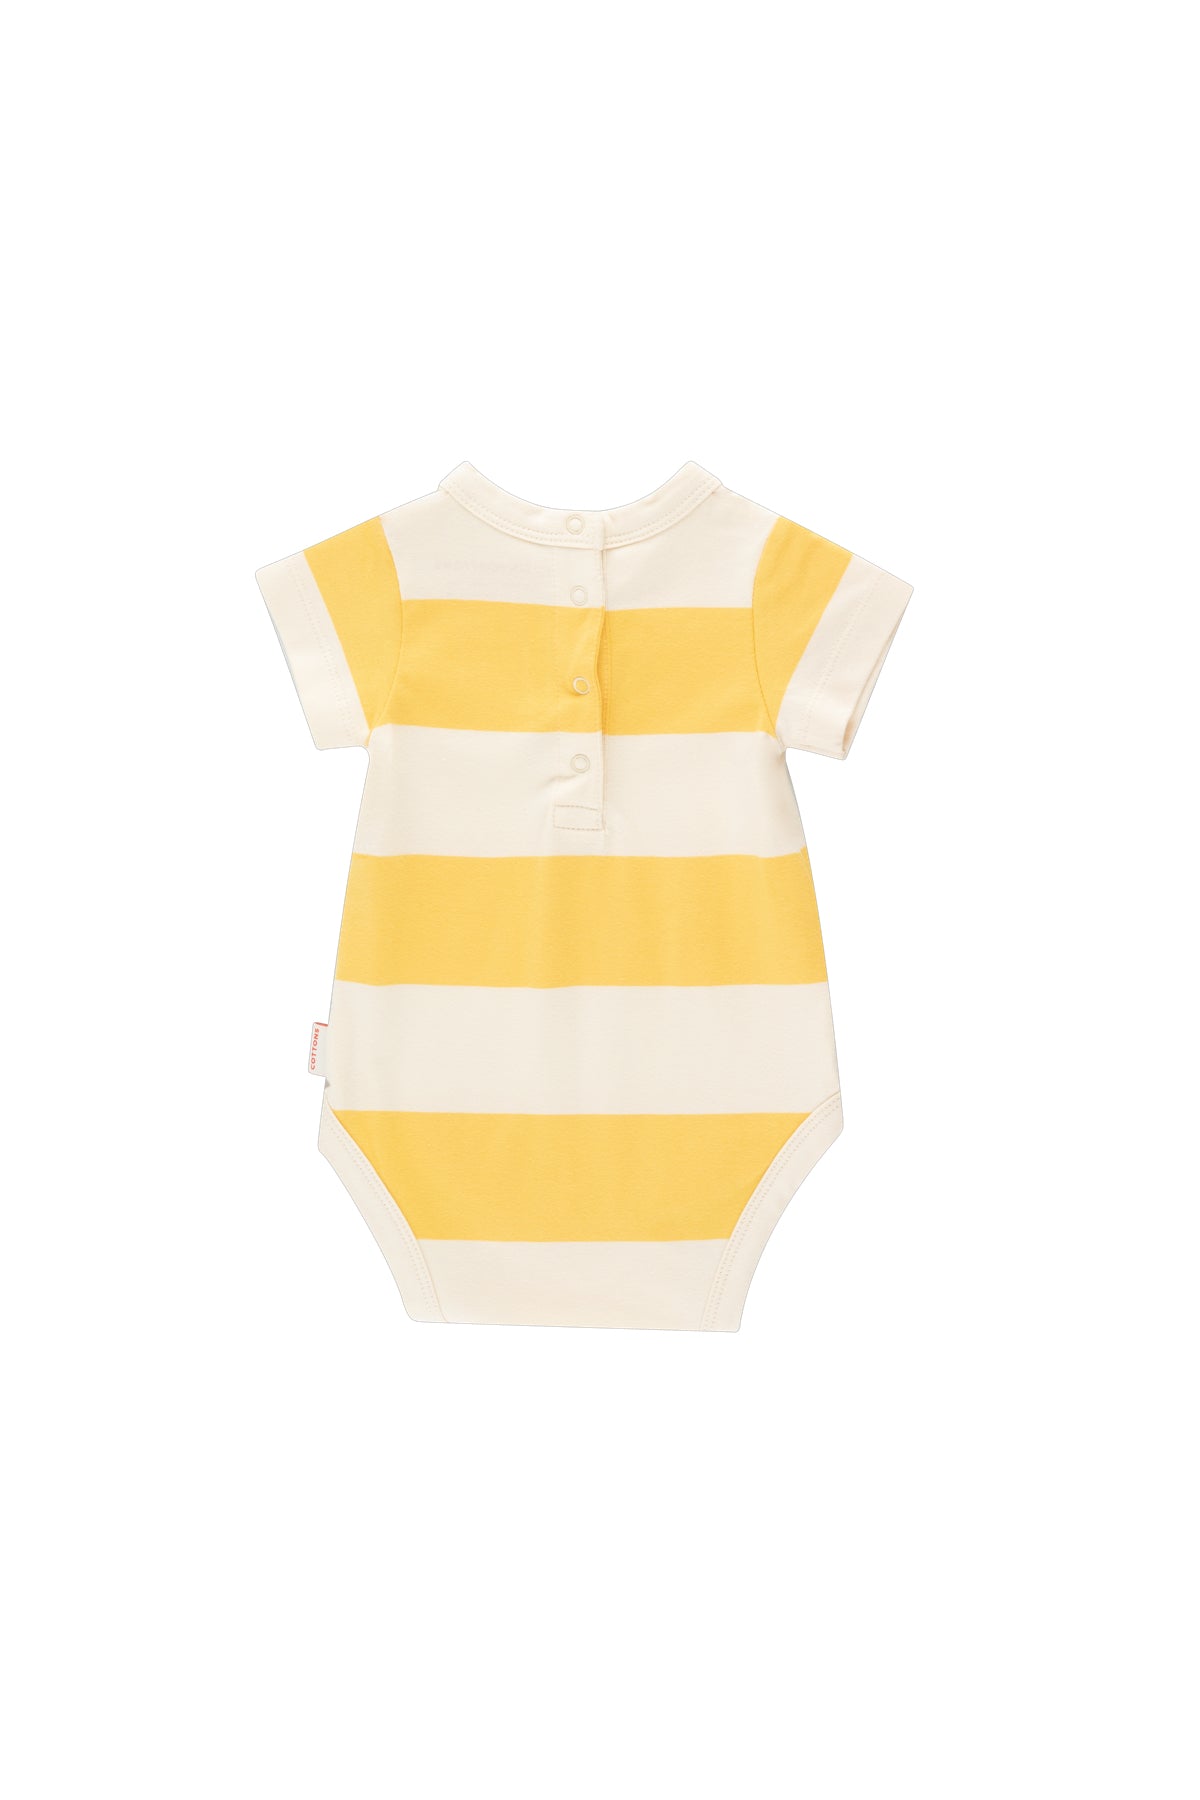 Tiny Cottons Paradiso Stripes Baby Body - Light Cream/Yellow